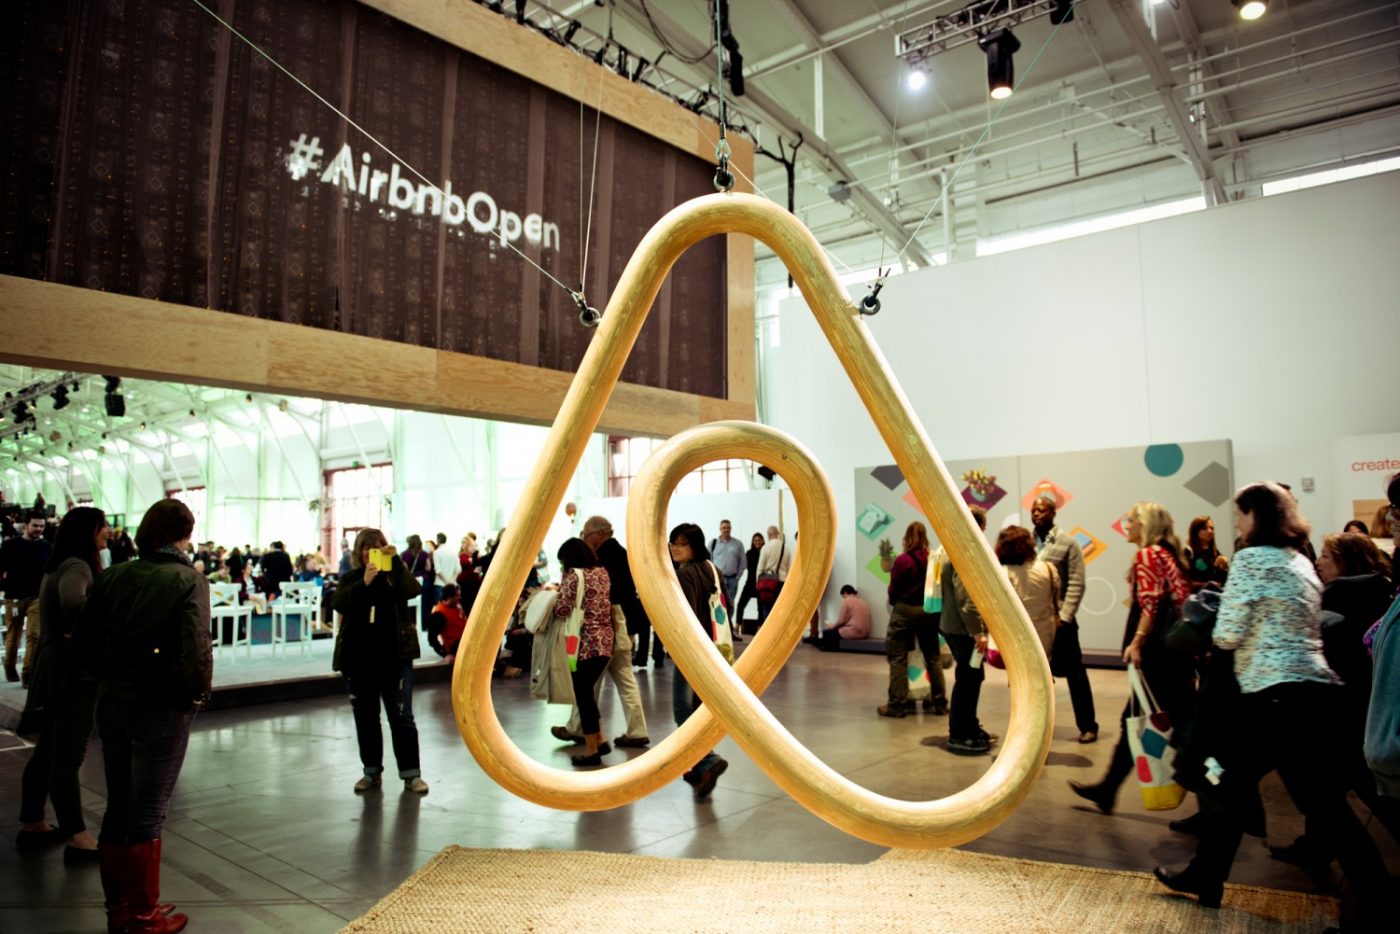 Airbnb vale más de 24.000 millones de dólares, más que el gigante hotelero Marriot. Imagen: Airbnb.